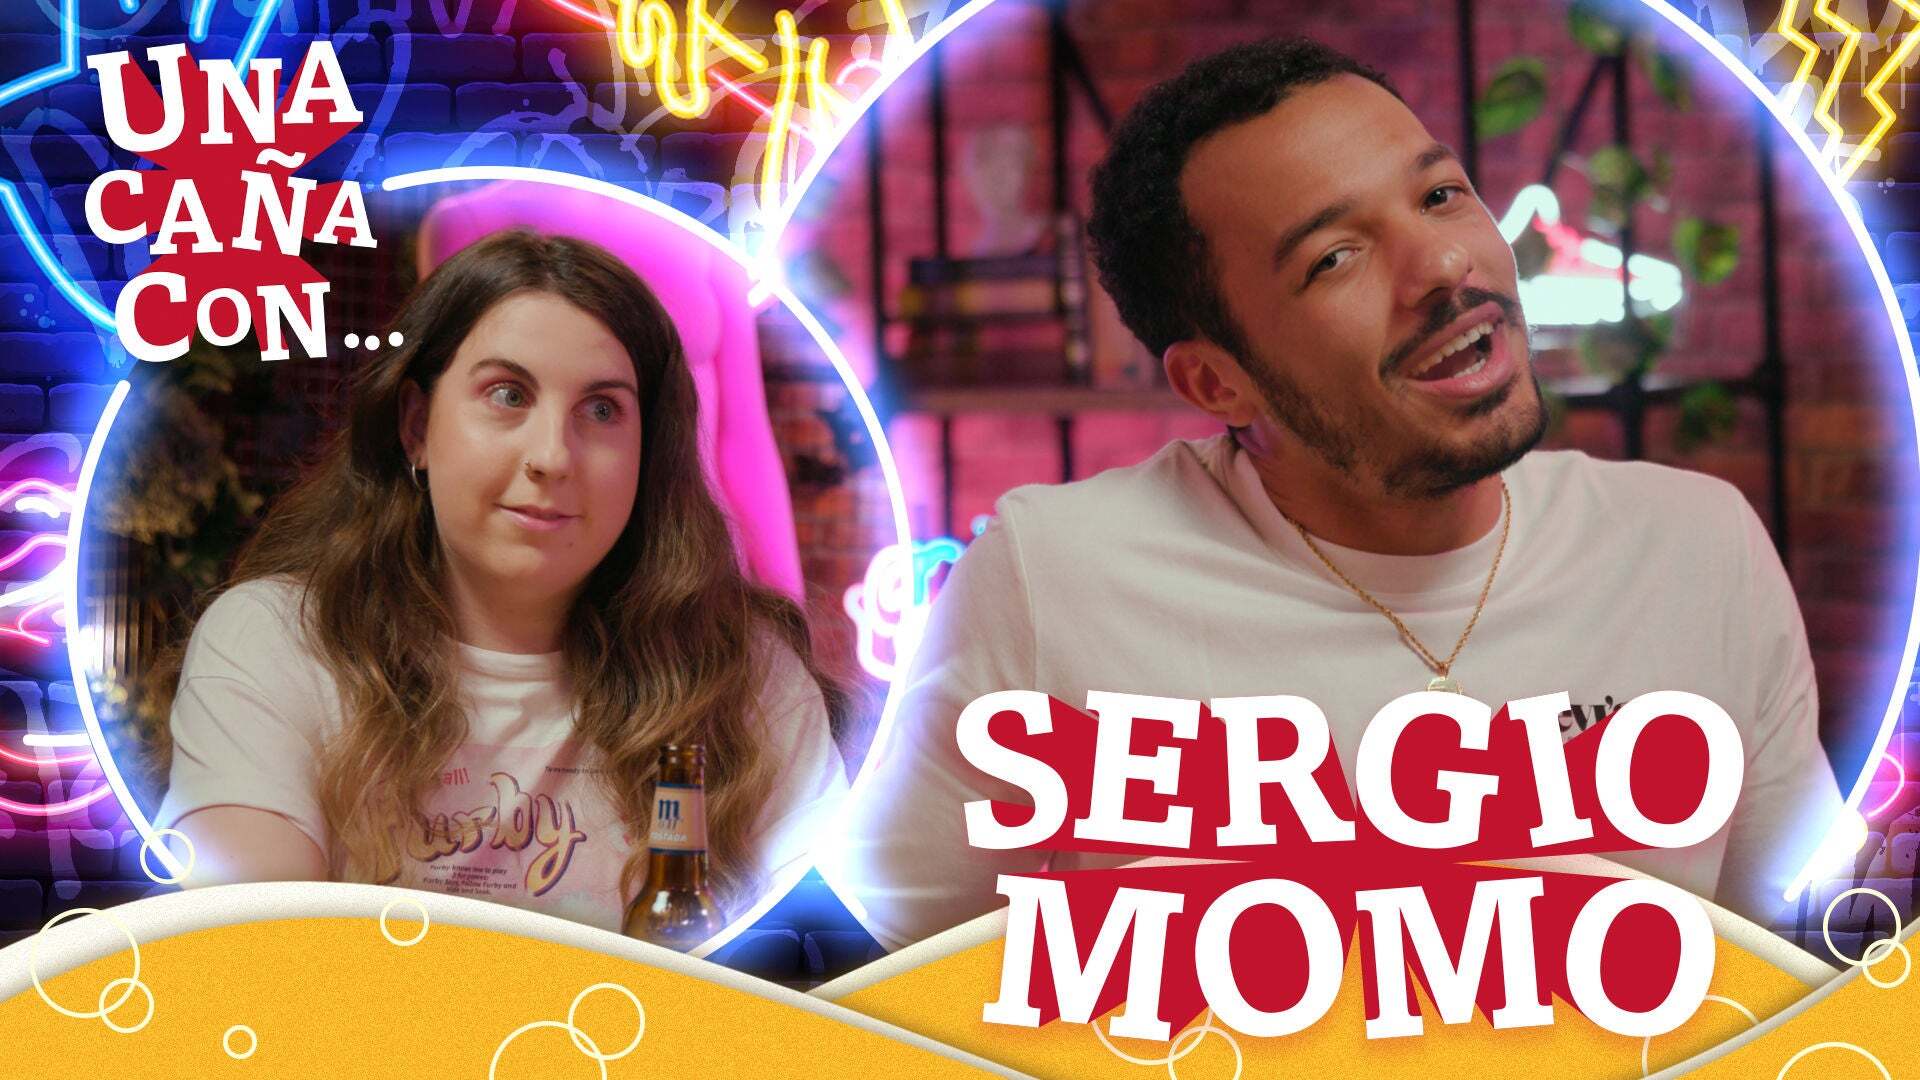 Temporada 1 #UnaCañaCon Sergio Momo: “Decidí que quería ser actor gracias a Hannah Montana”